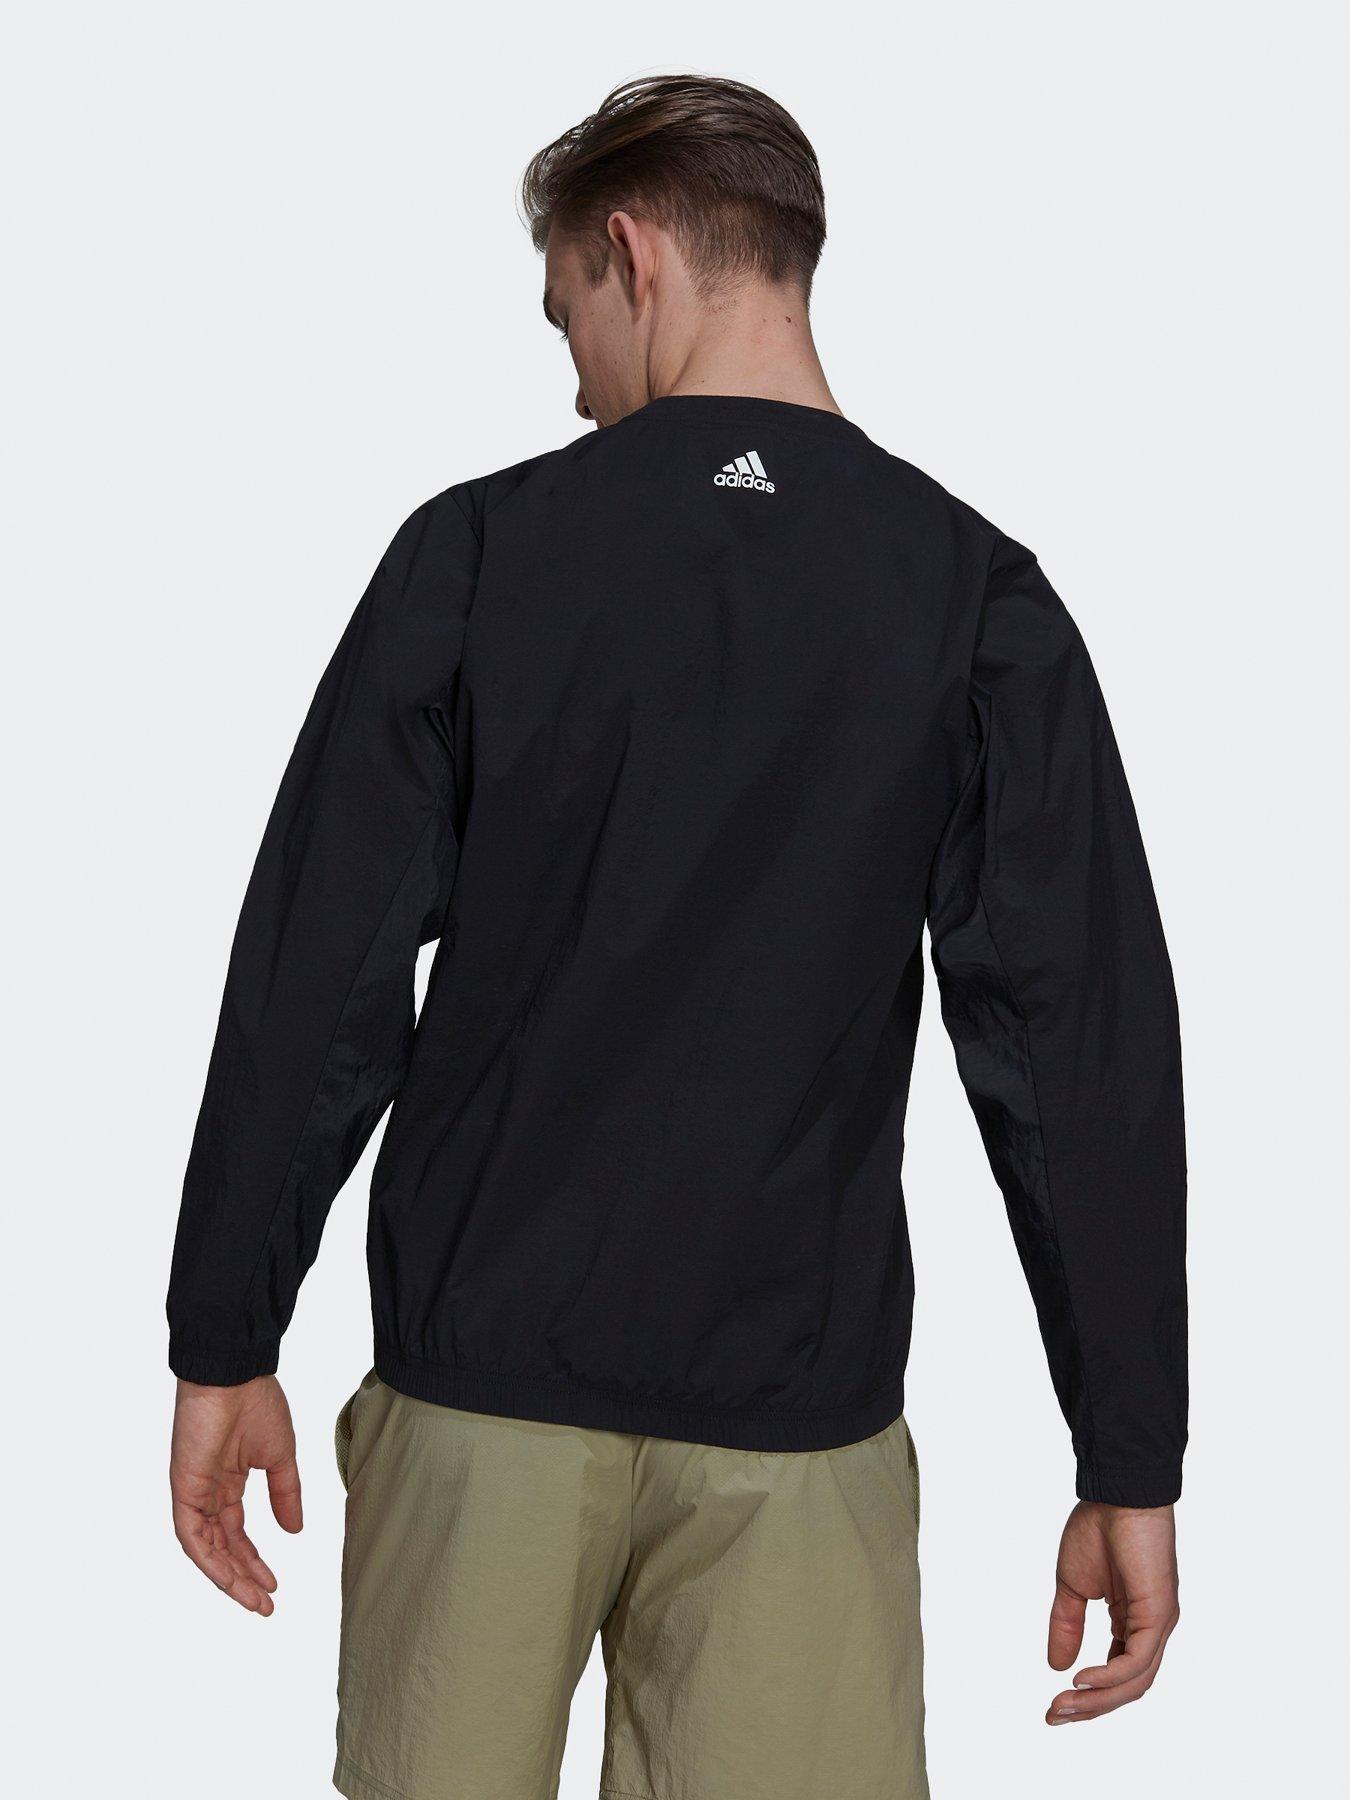  Sportswear X-city Packable Sweatshirt